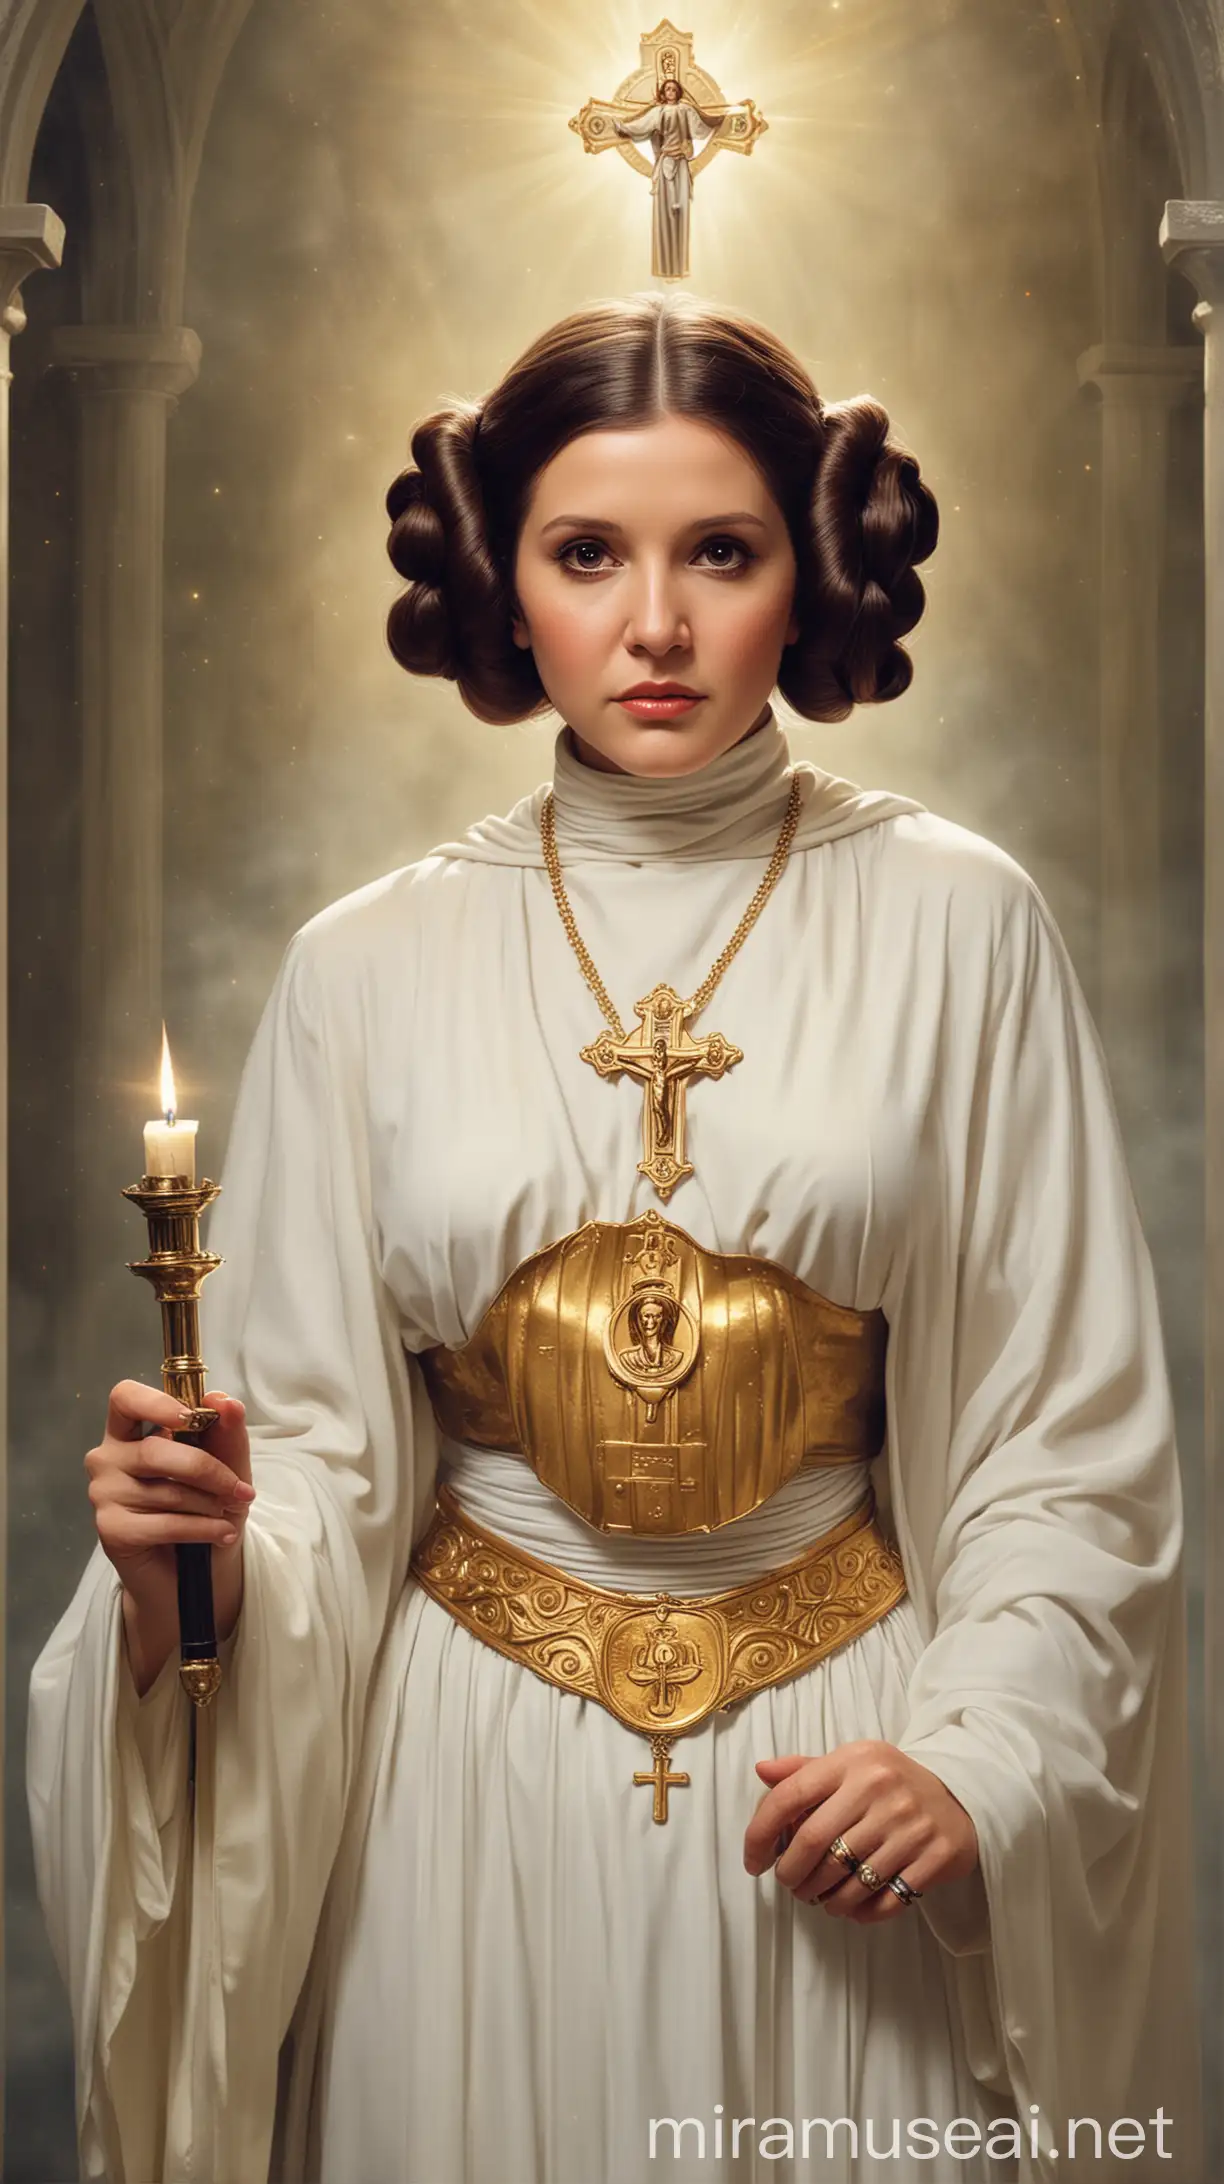 Princess Leia as a Catholic saint.